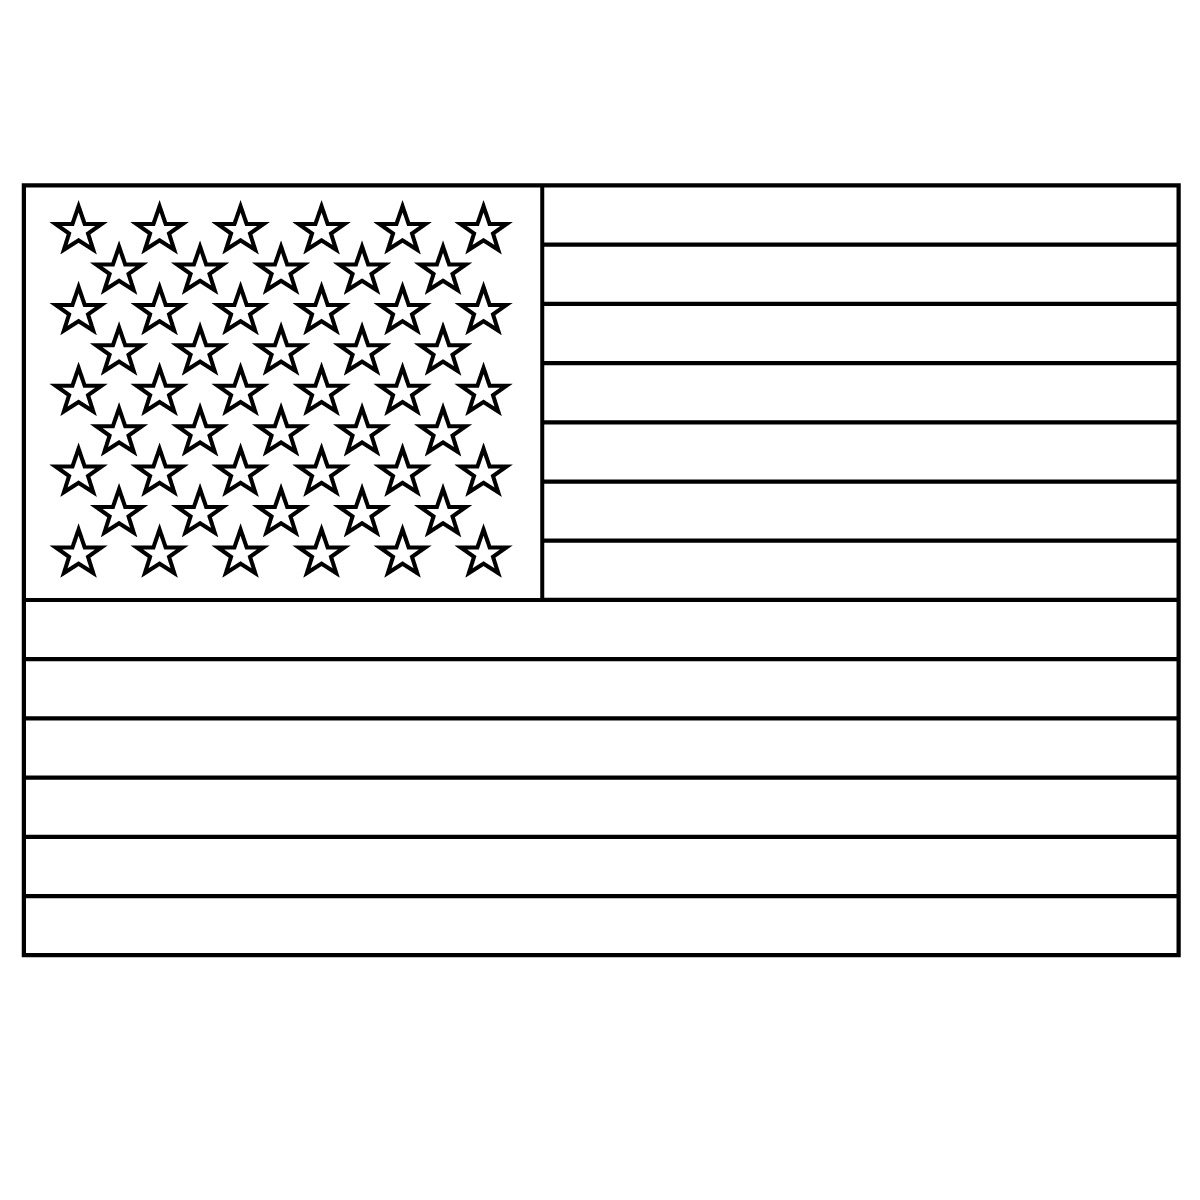 [clip-art-american-flag-black-and-white.jpg]